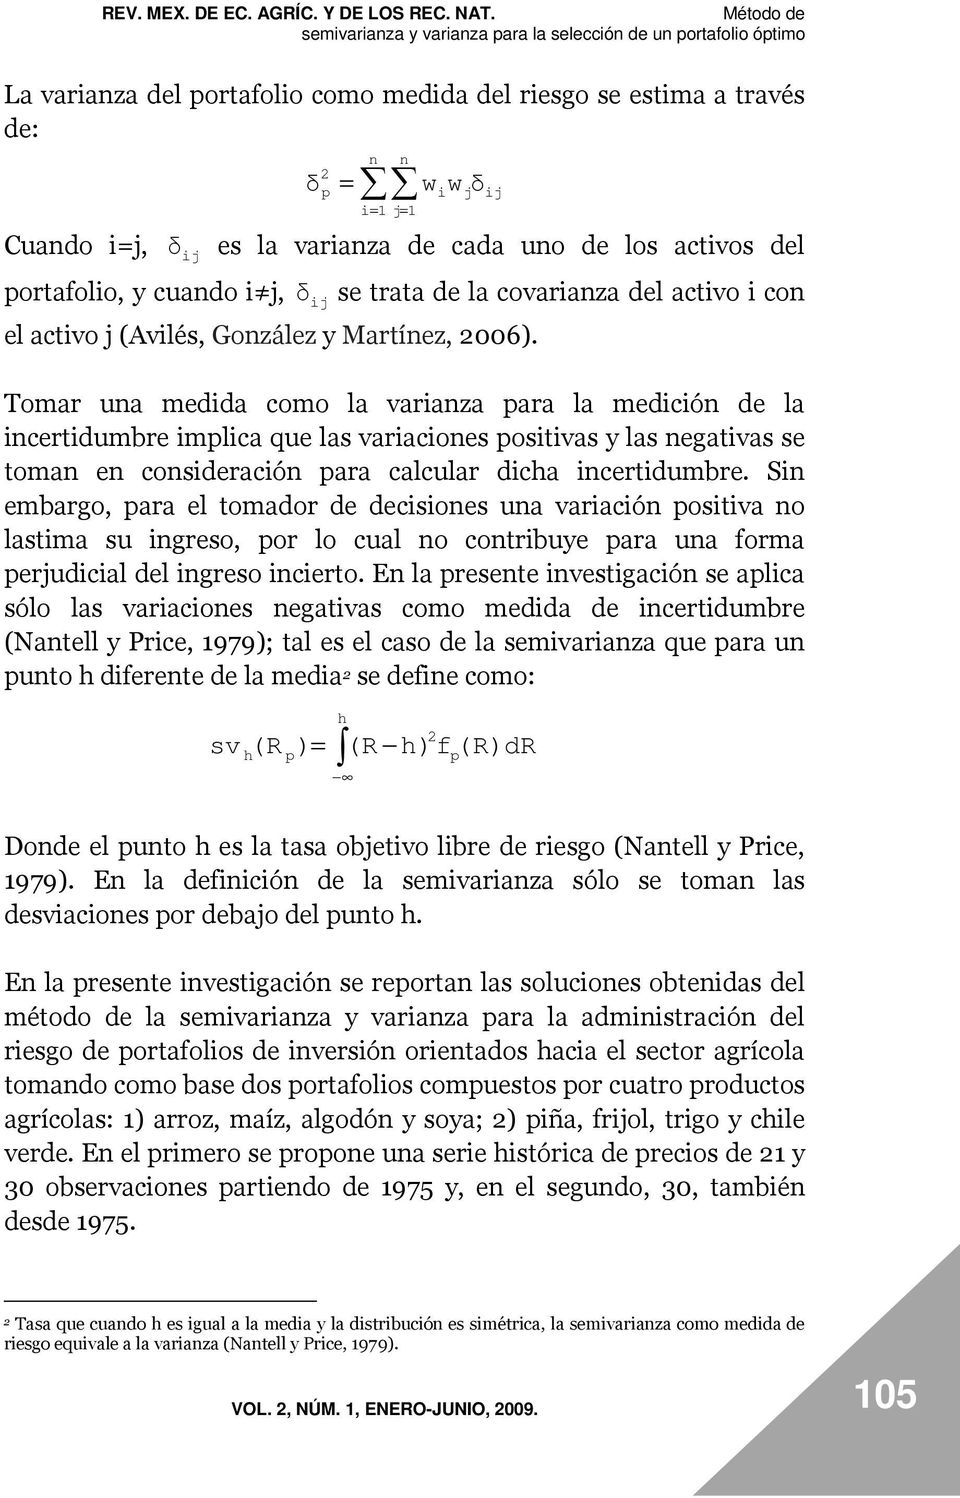 del portaolo, y cuado j, δ j se trata de la covaraza del actvo co el actvo j (Avlés, Gozález y Martíez, 2006).